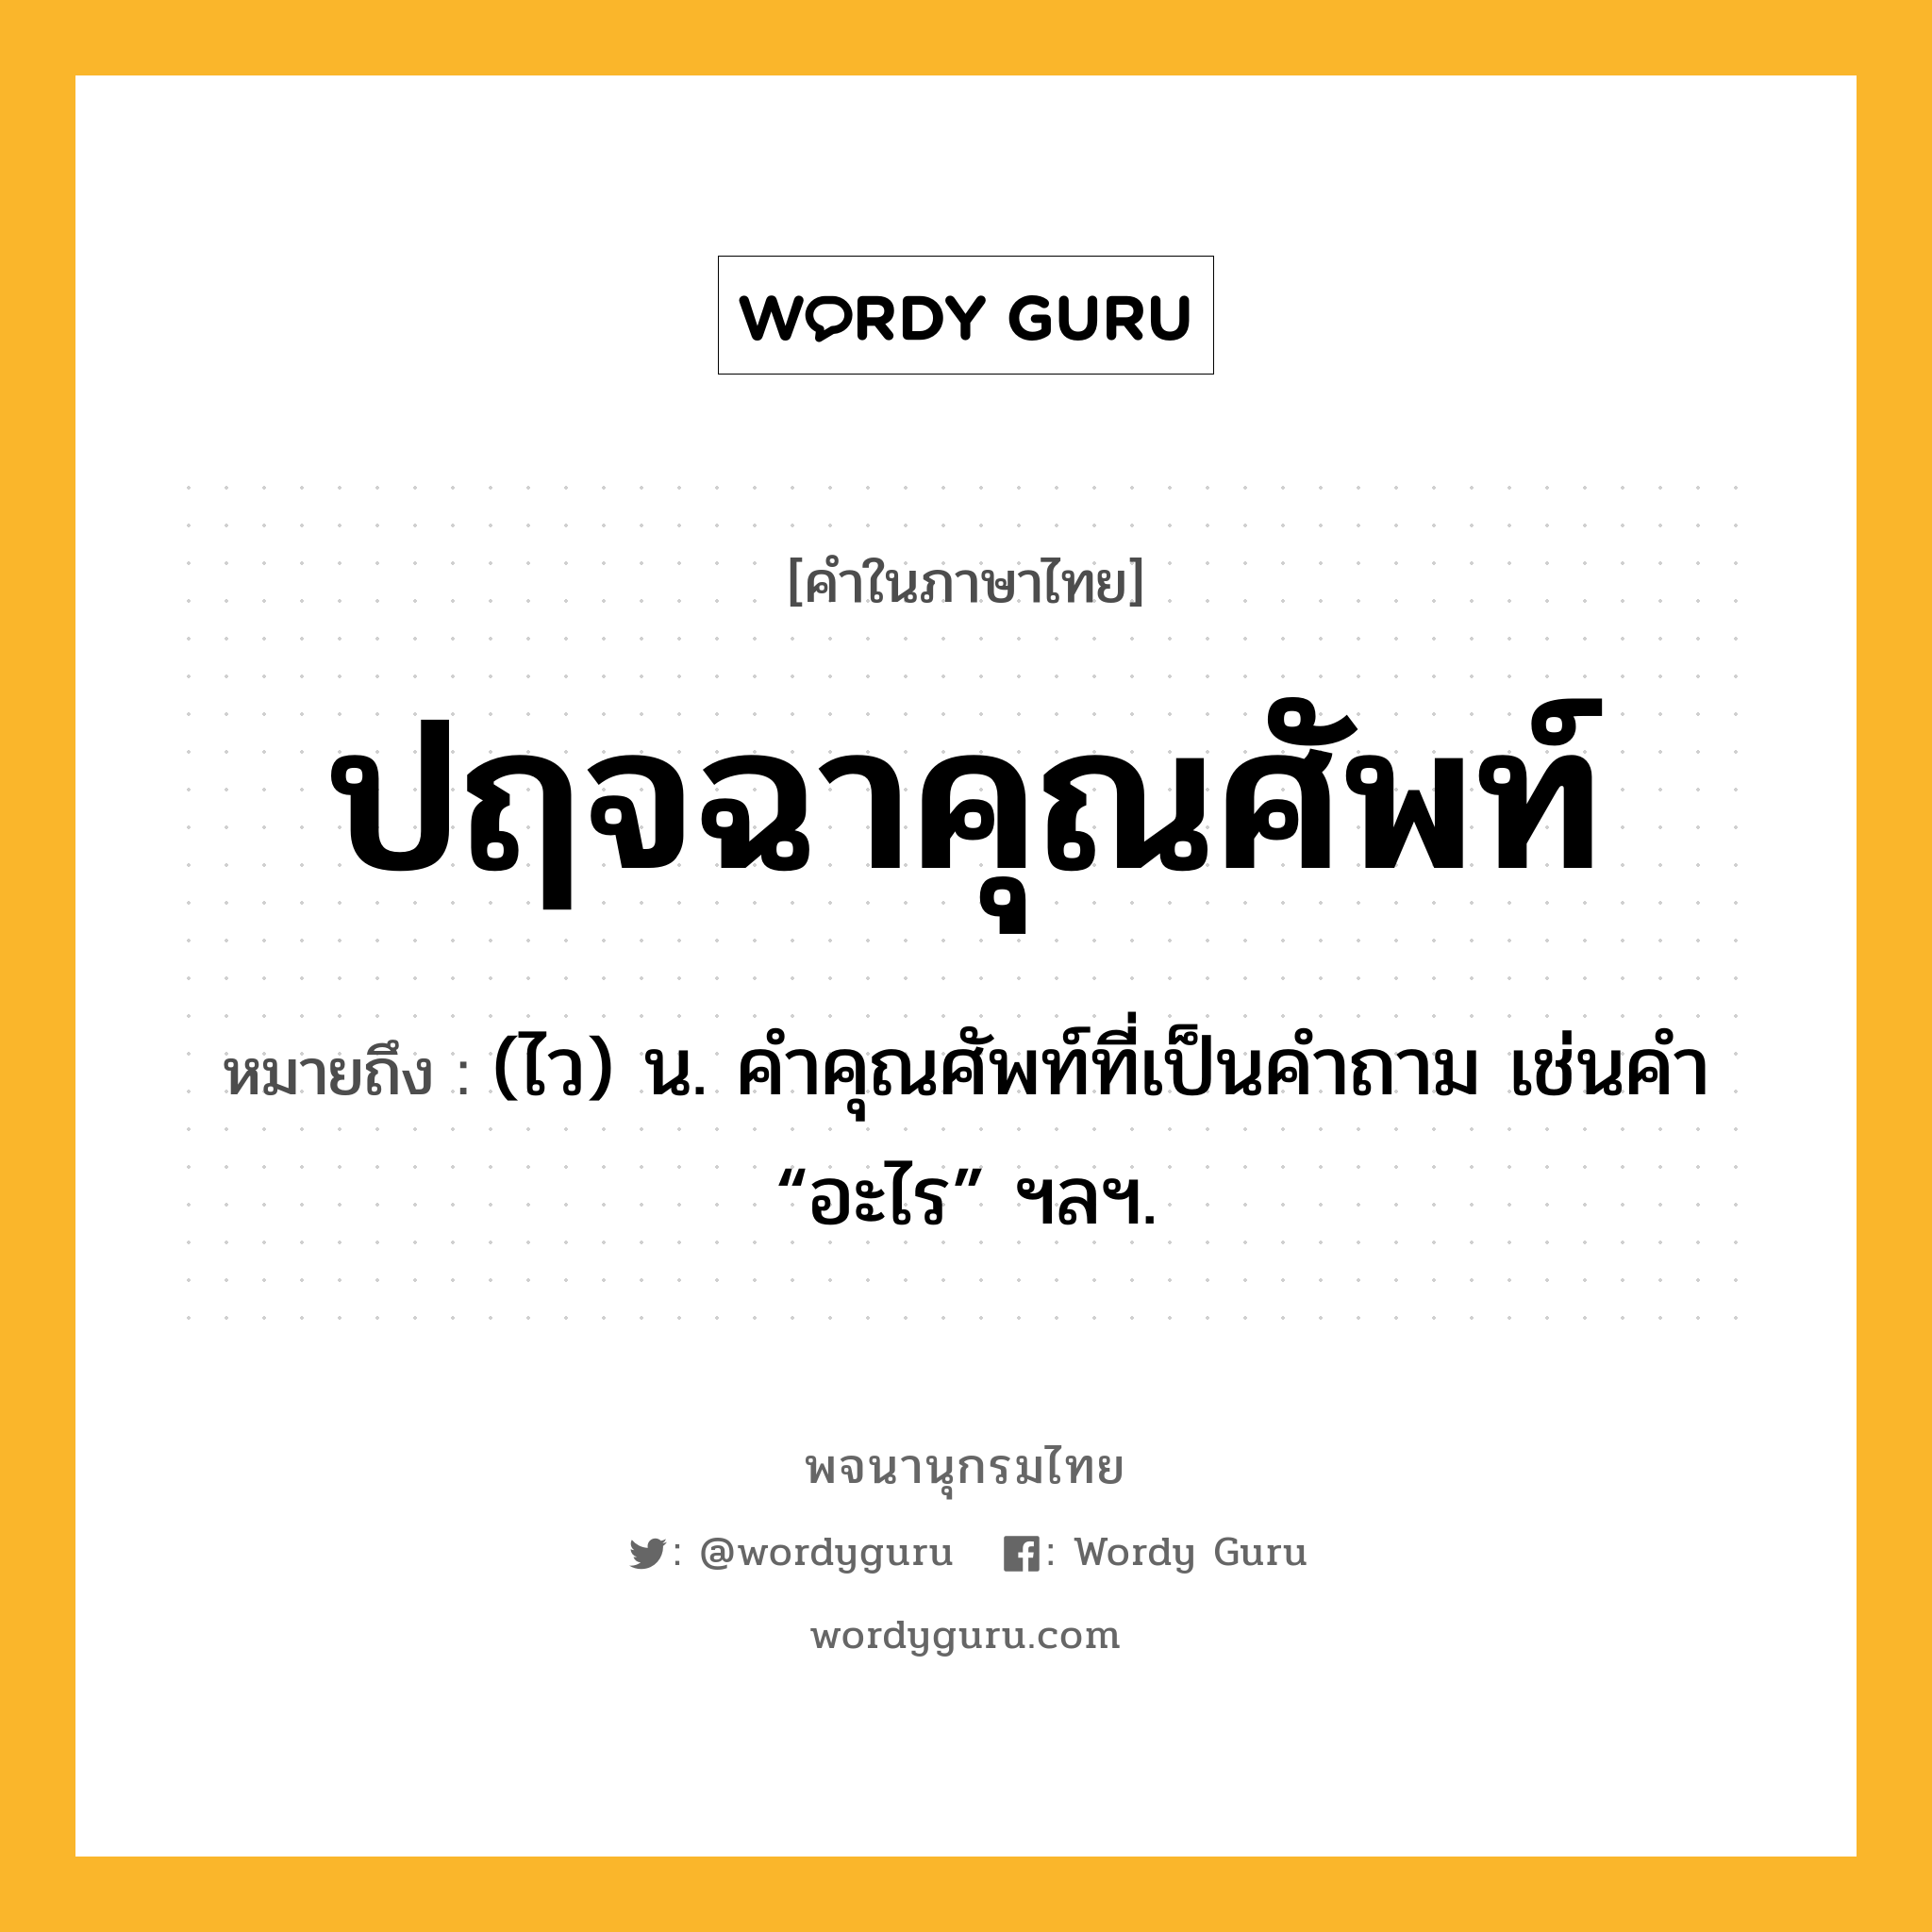 ปฤจฉาคุณศัพท์ หมายถึงอะไร?, คำในภาษาไทย ปฤจฉาคุณศัพท์ หมายถึง (ไว) น. คําคุณศัพท์ที่เป็นคําถาม เช่นคํา “อะไร” ฯลฯ.